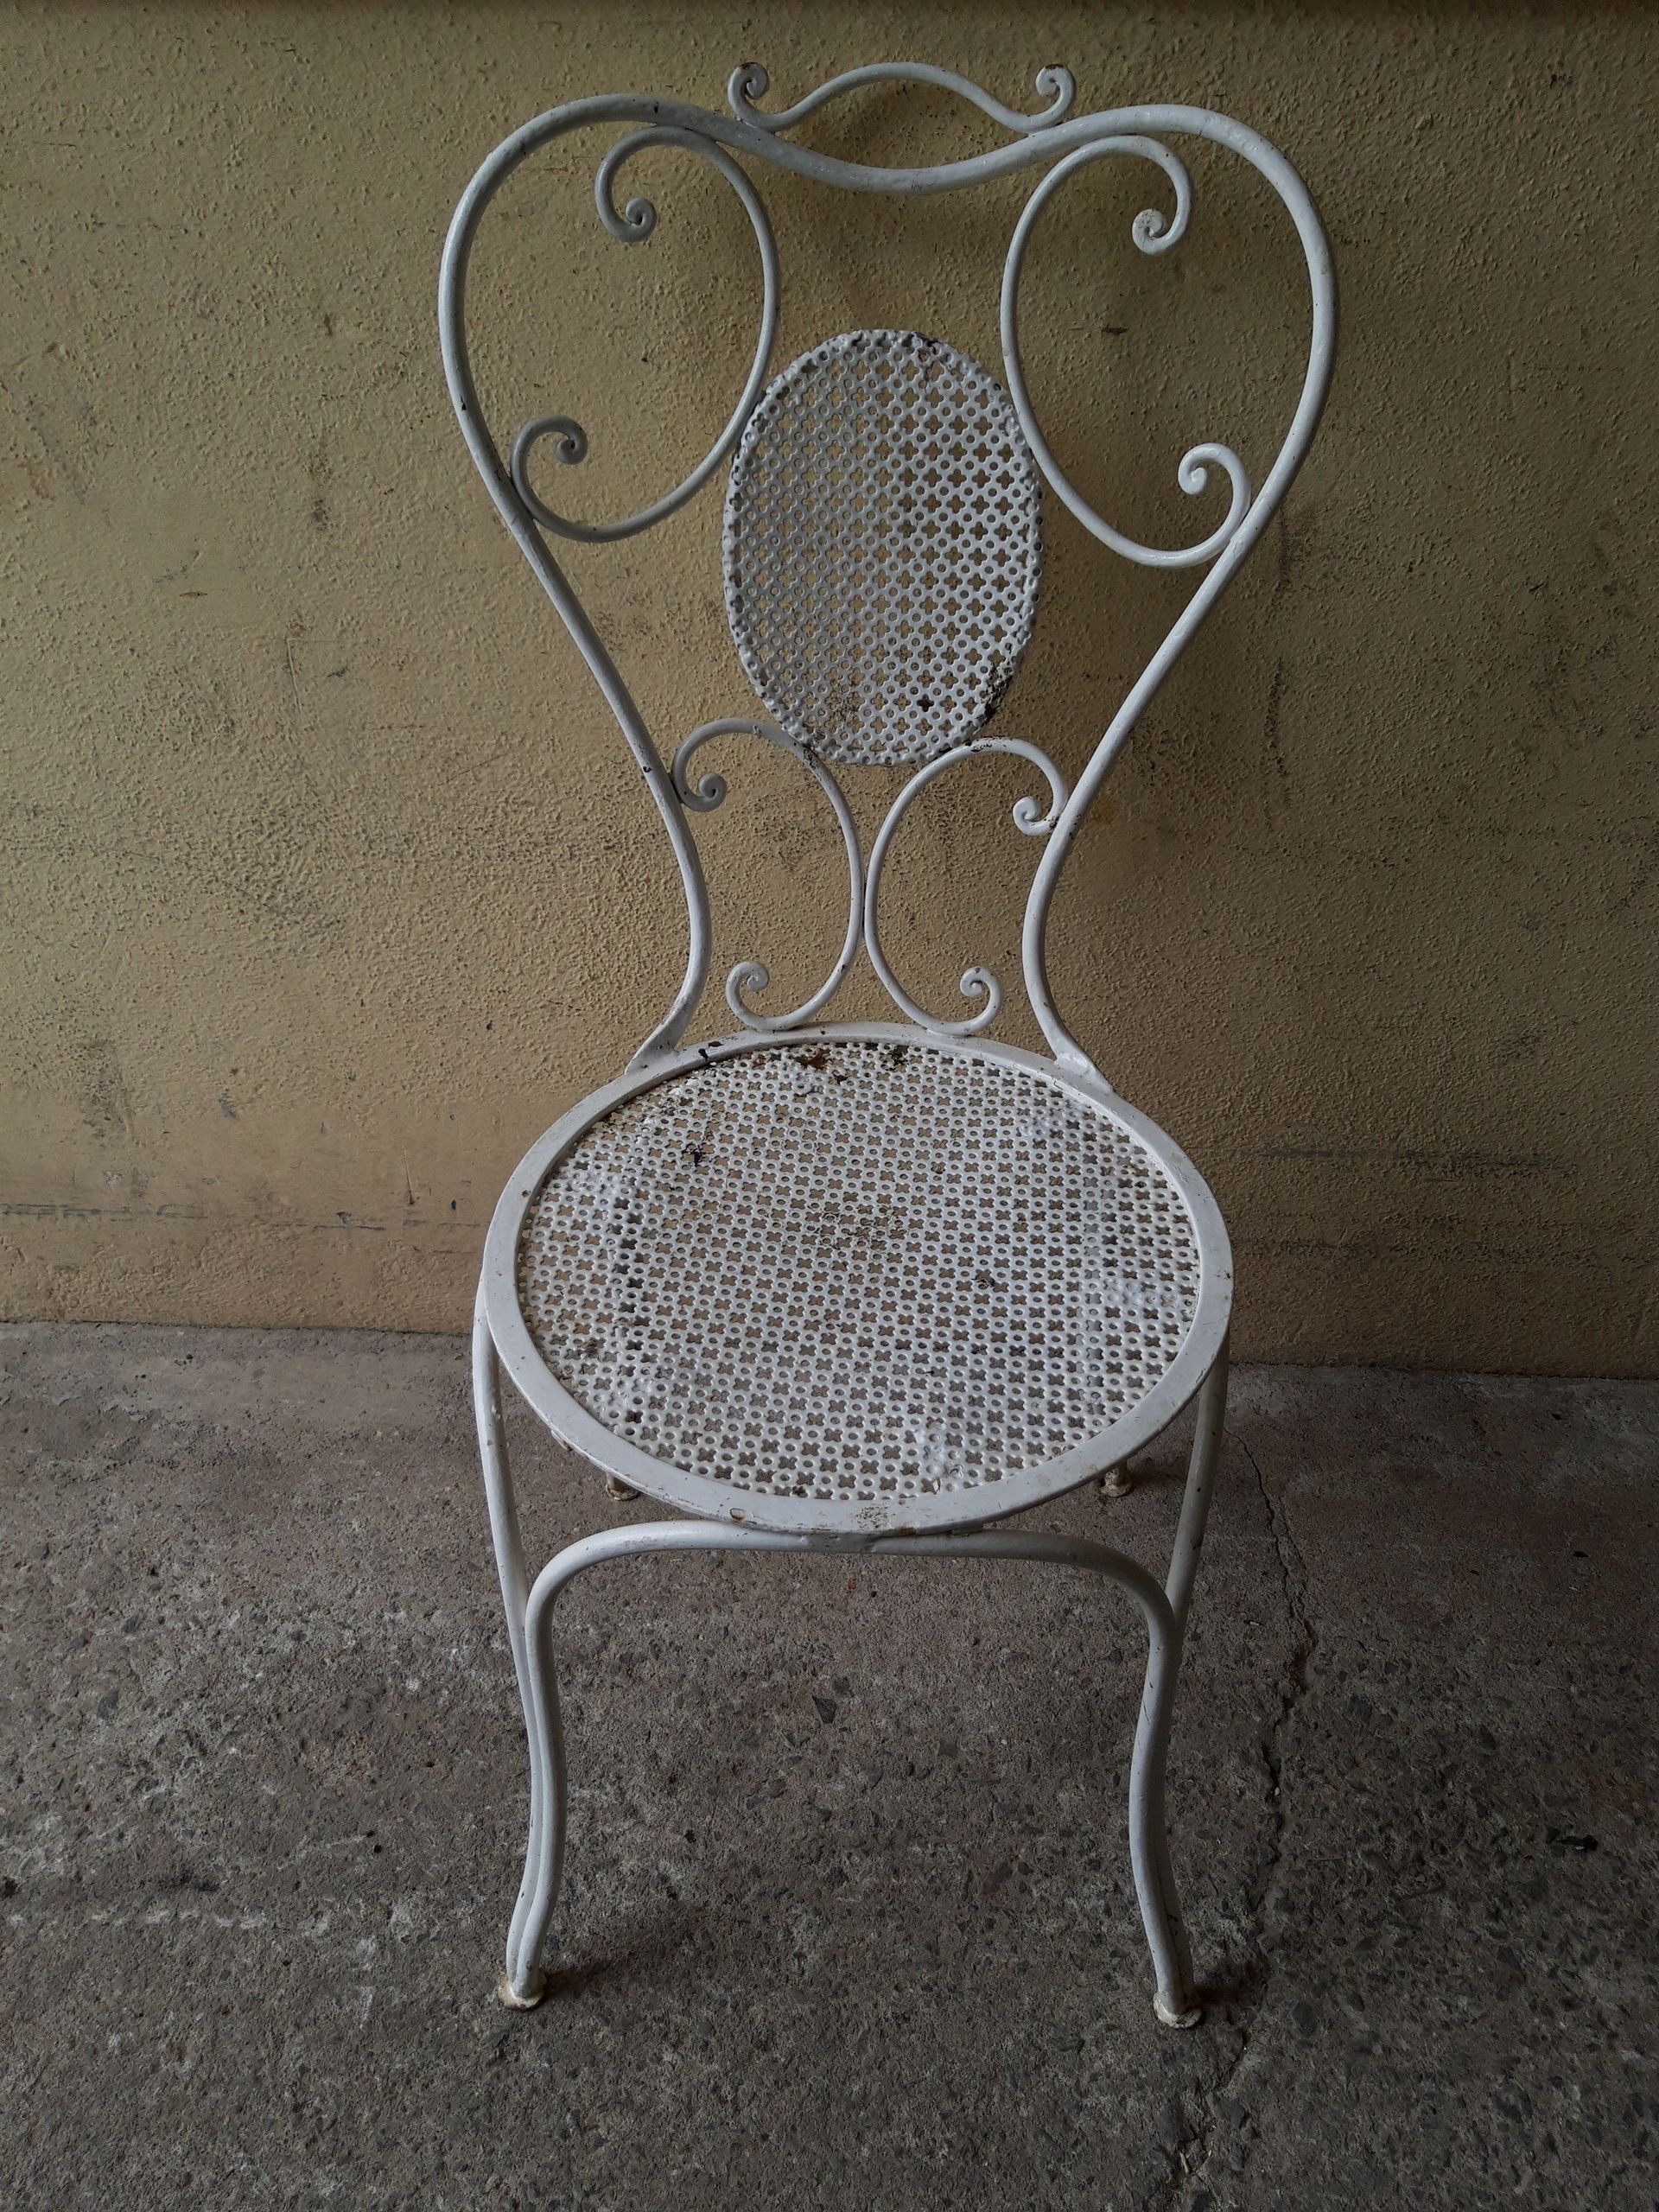 Chaise blanche de jardin tachée et ternie qui doit être décapée